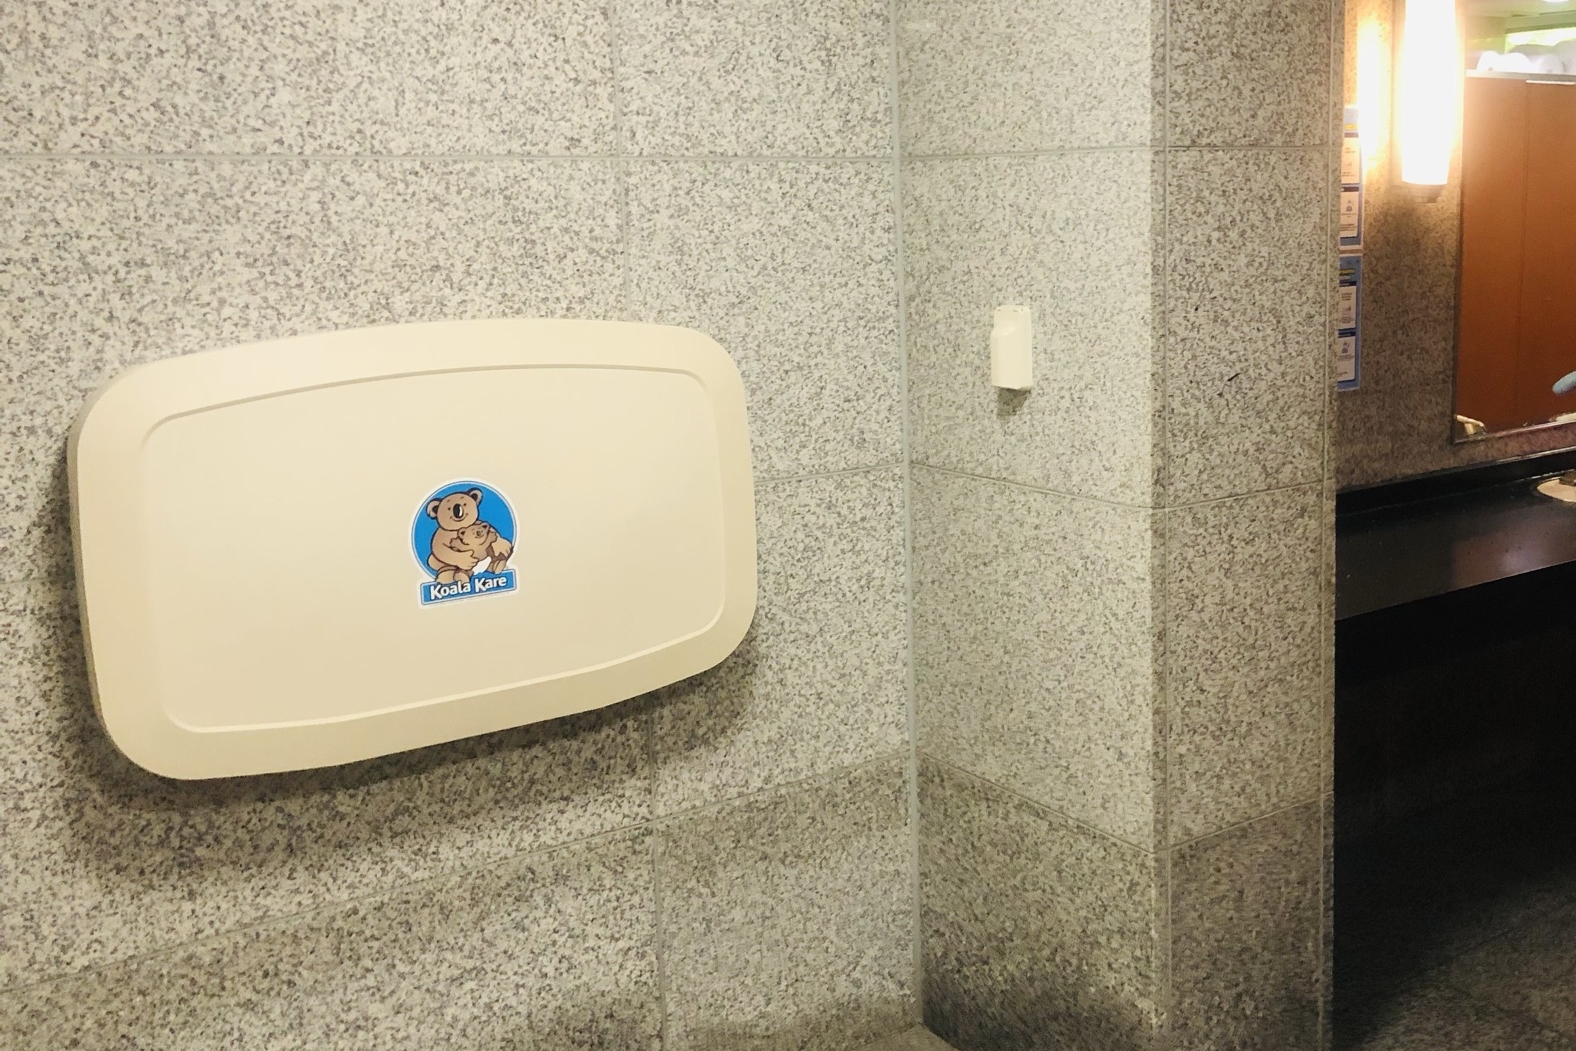 임산부 및 유아휴게공간0 : 화장실 내부에 설치되어있는기저귀교환대